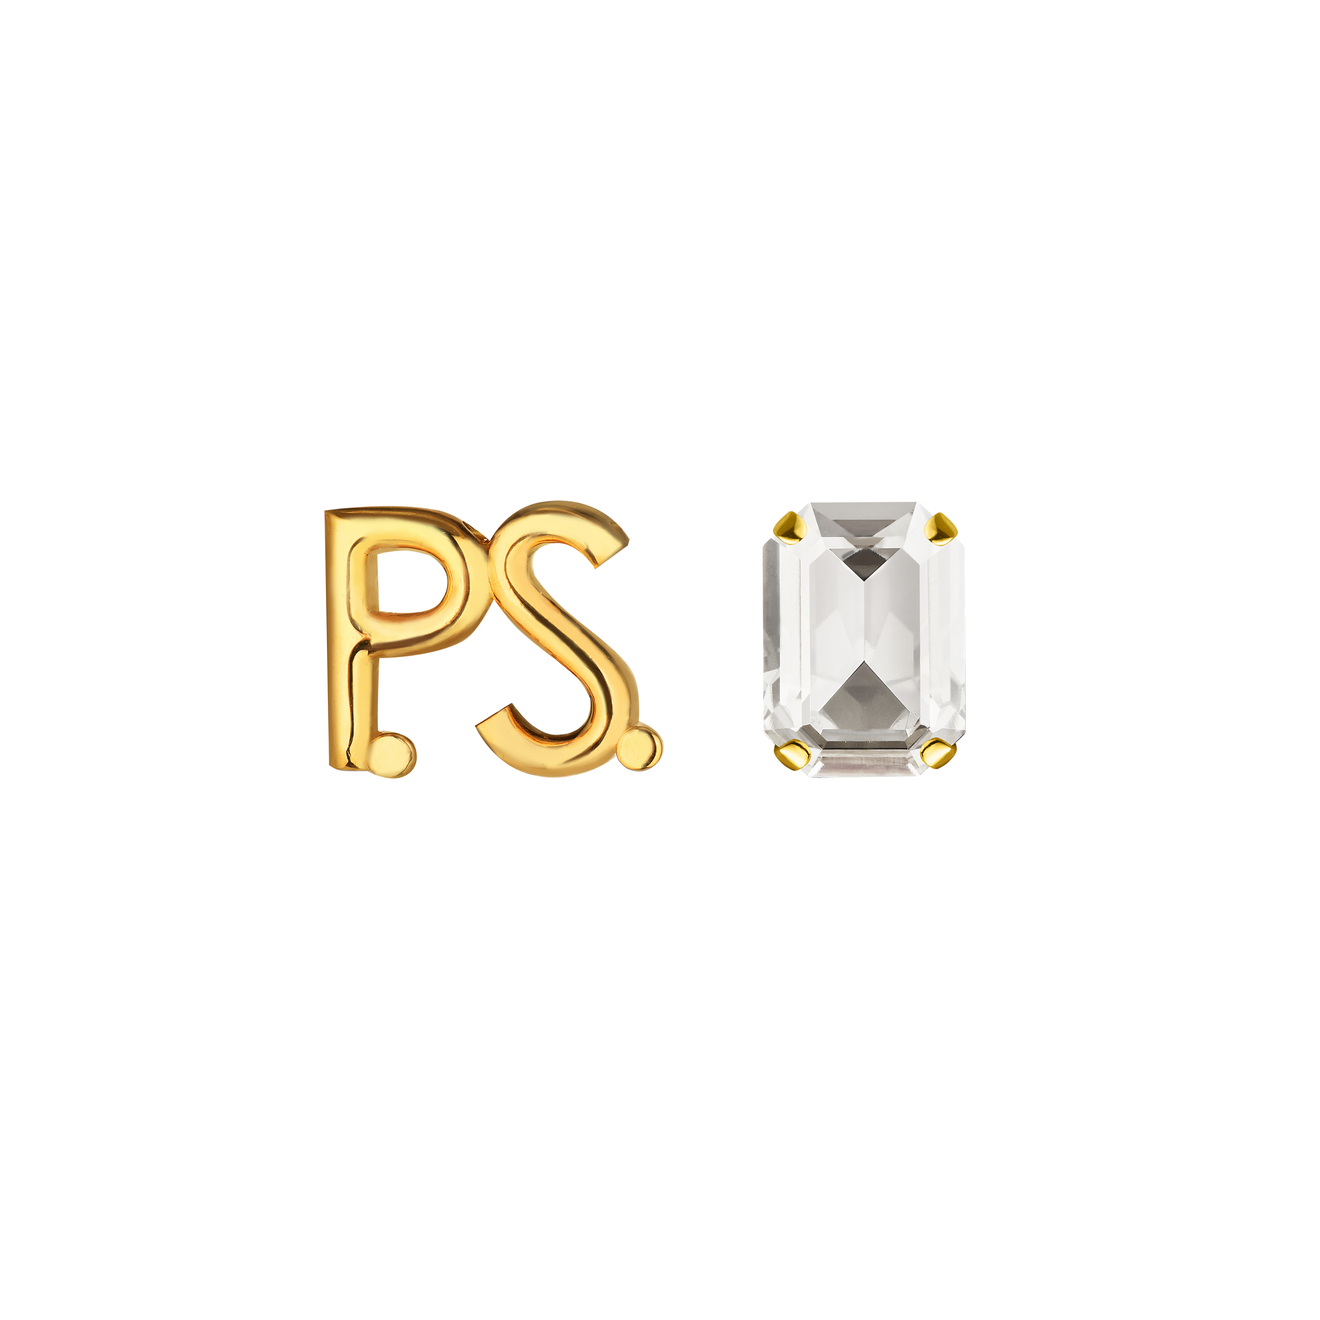 Phenomenal Studio Позолоченные серьги с фирменным логотипом и крупным кристаллом P.S. Crystal Gold phenomenal studio серьги step cut gold с кристаллами